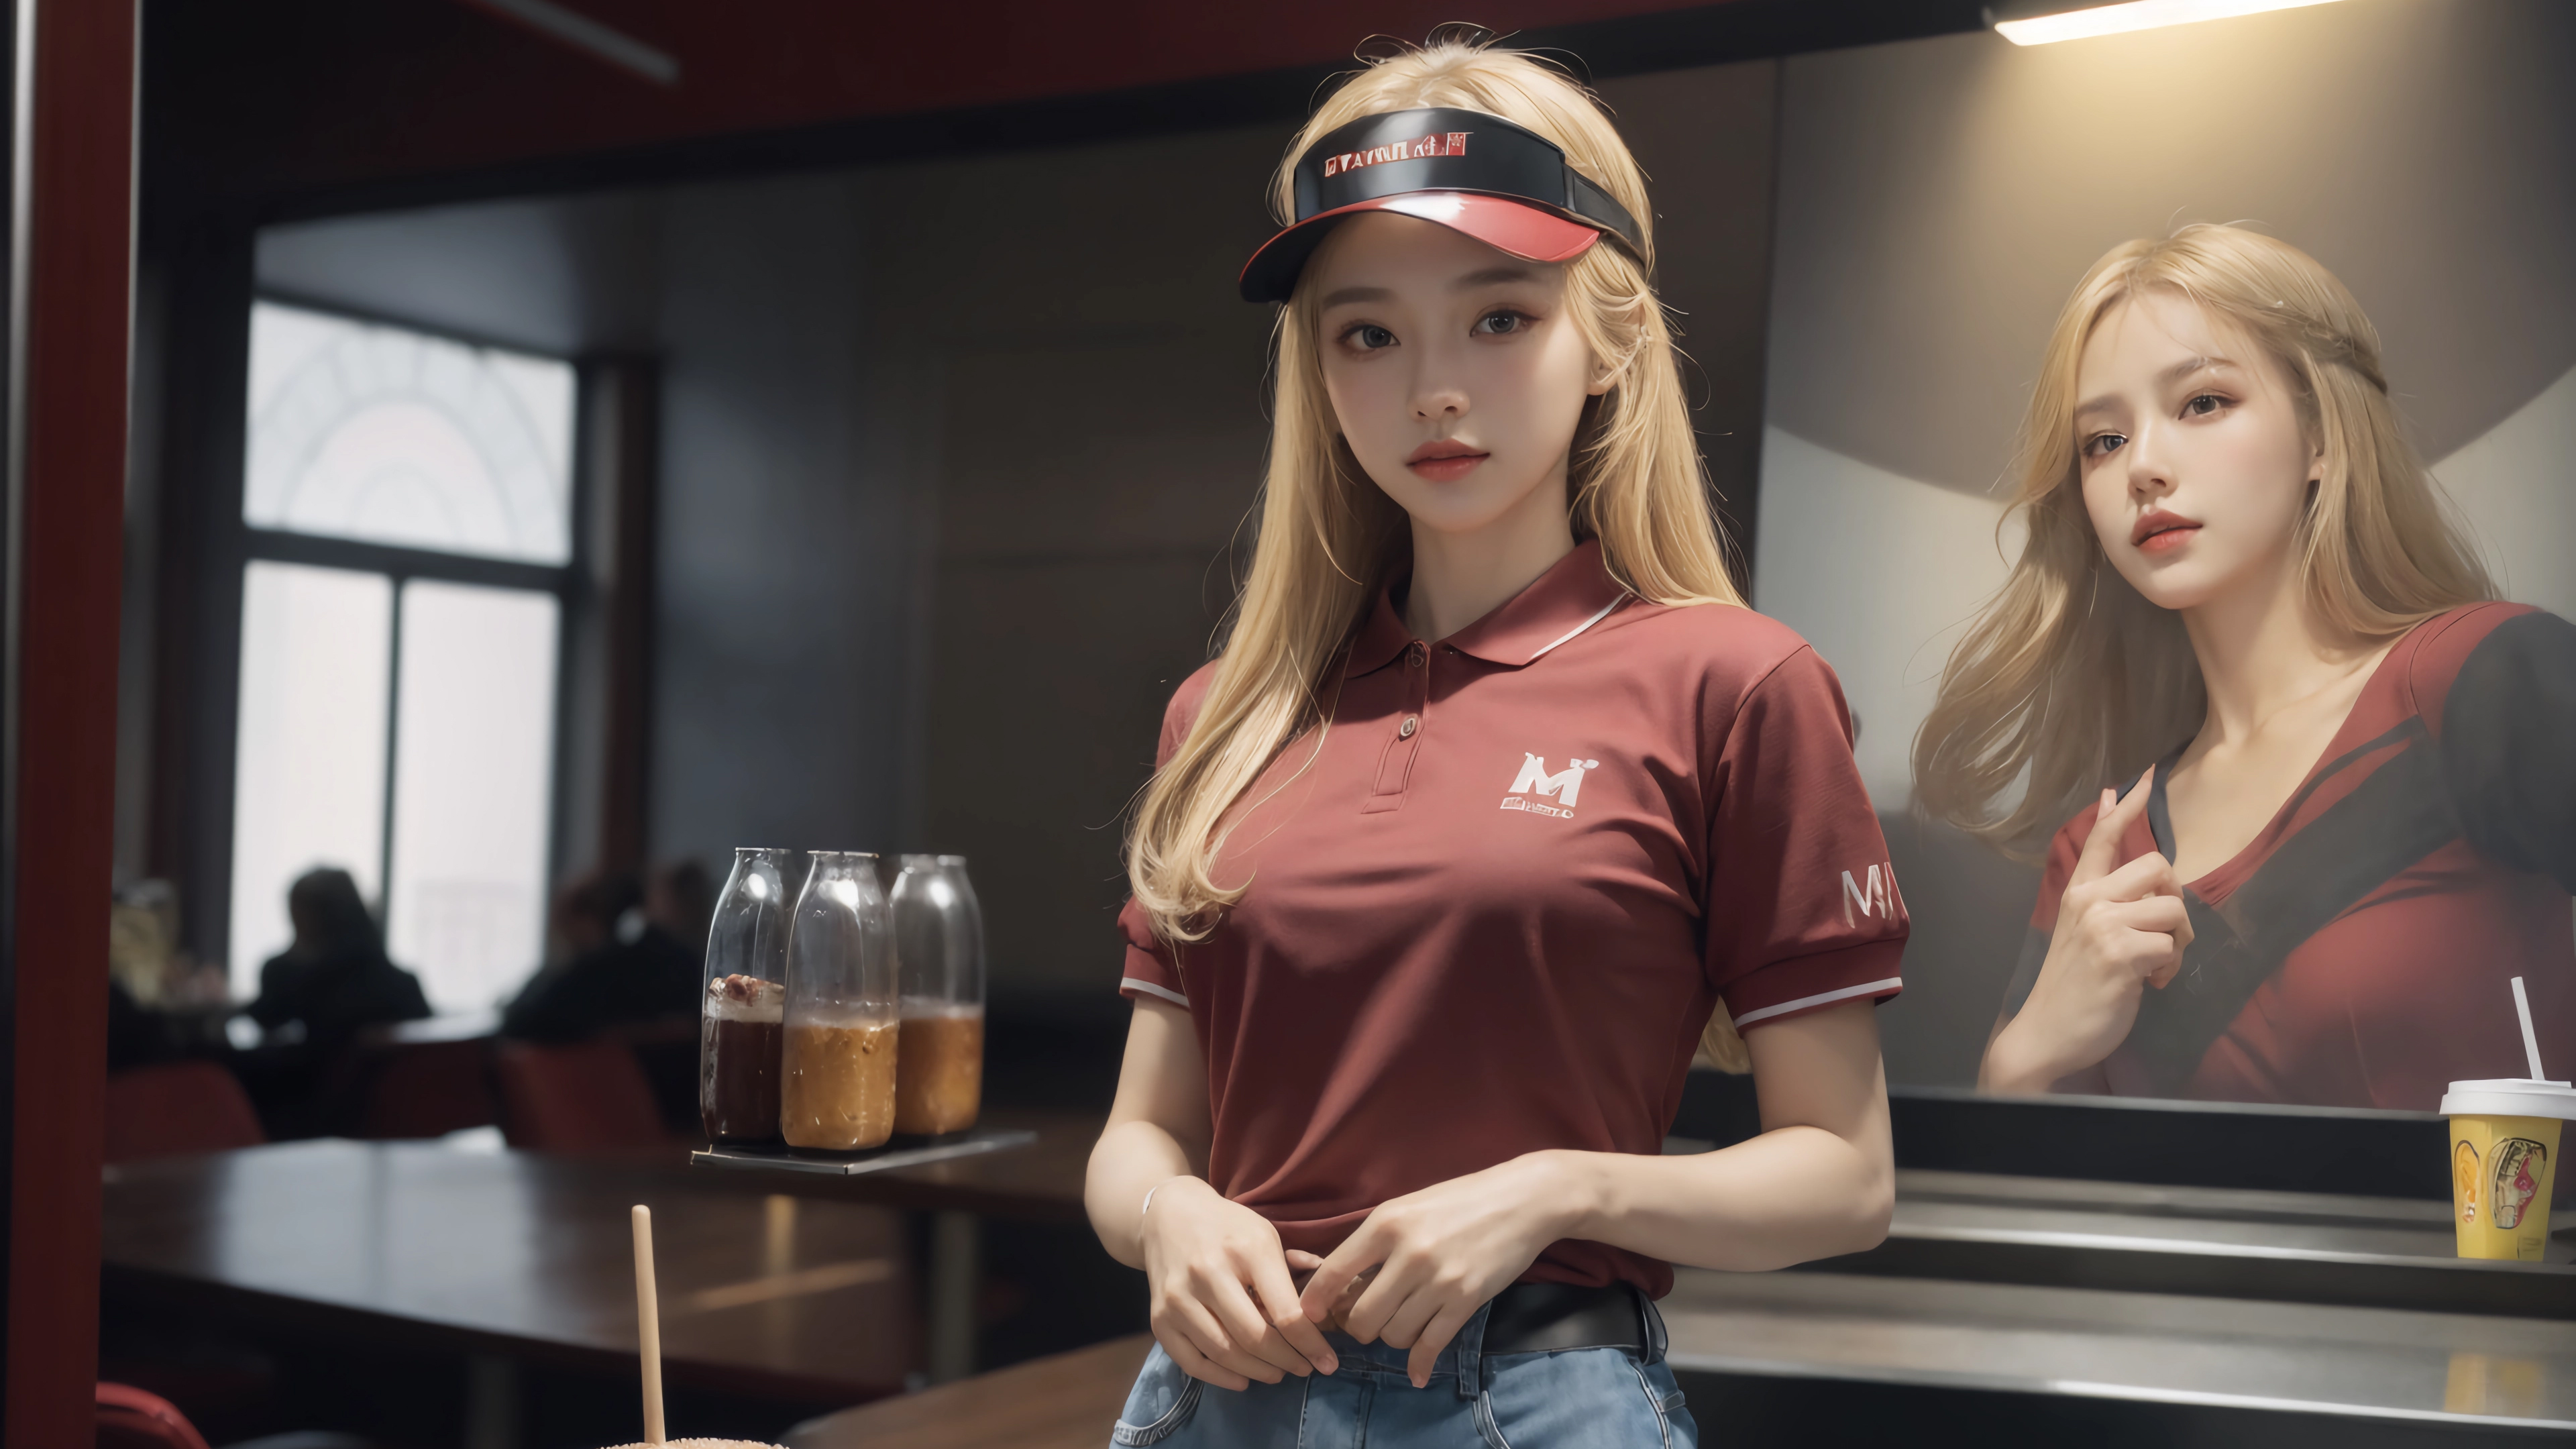 General 3840x2160 blonde restaurant AI art Asian women looking at viewer hat uniform drink lights